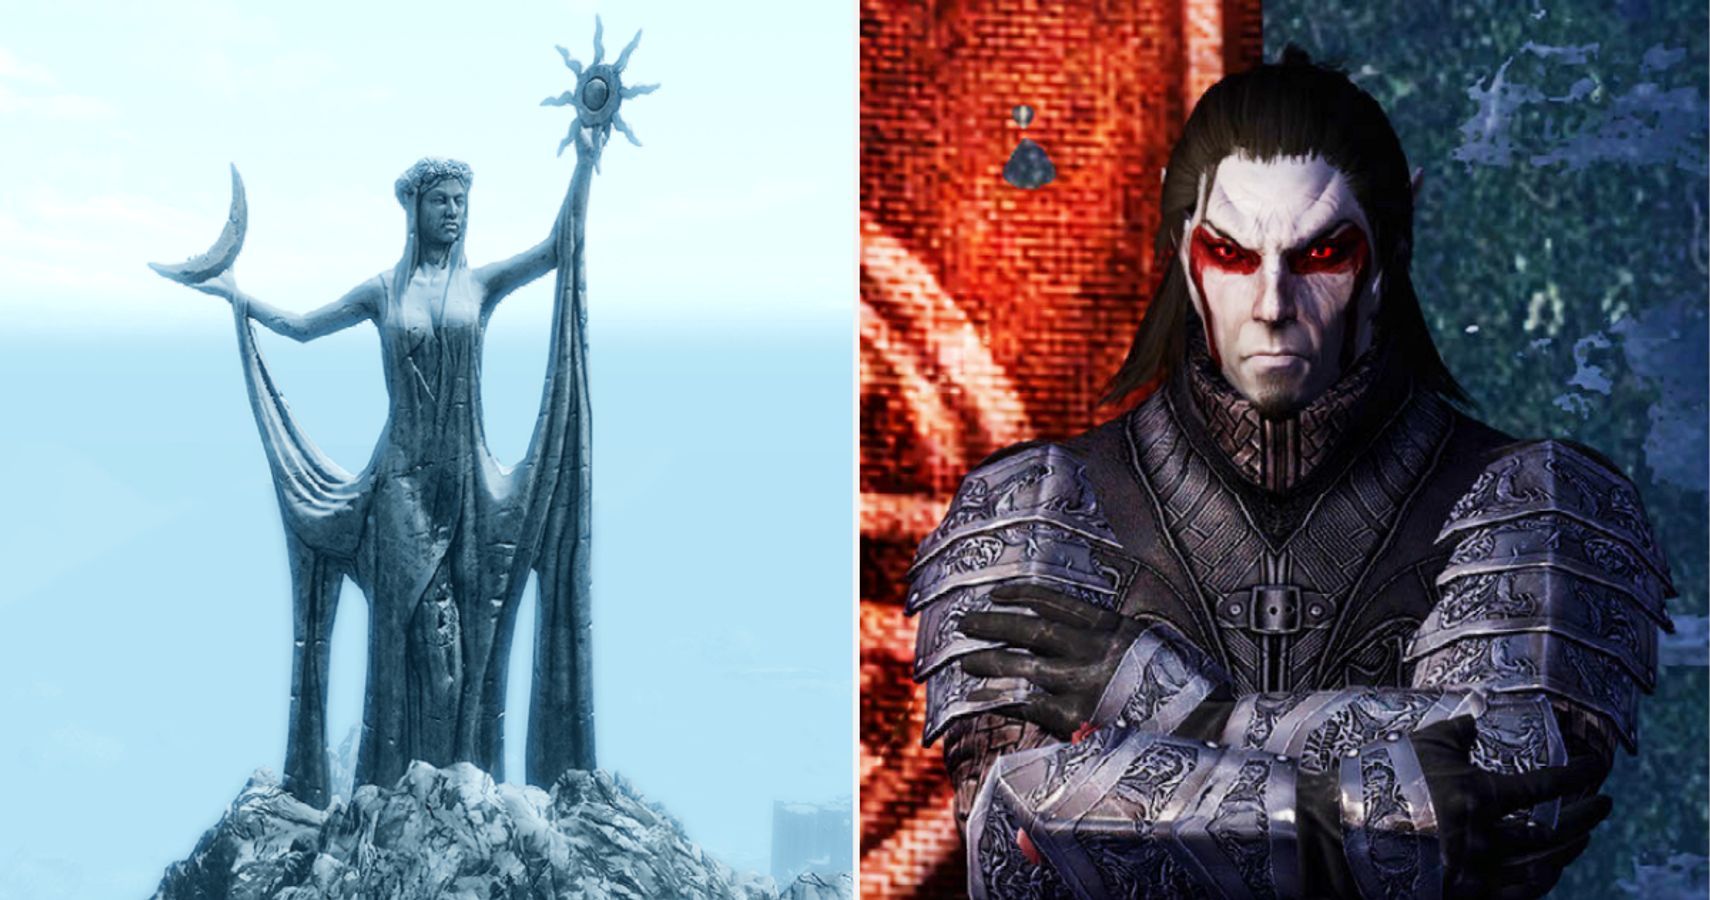 Skyrim Azura's Statue And Dunmer Warrior